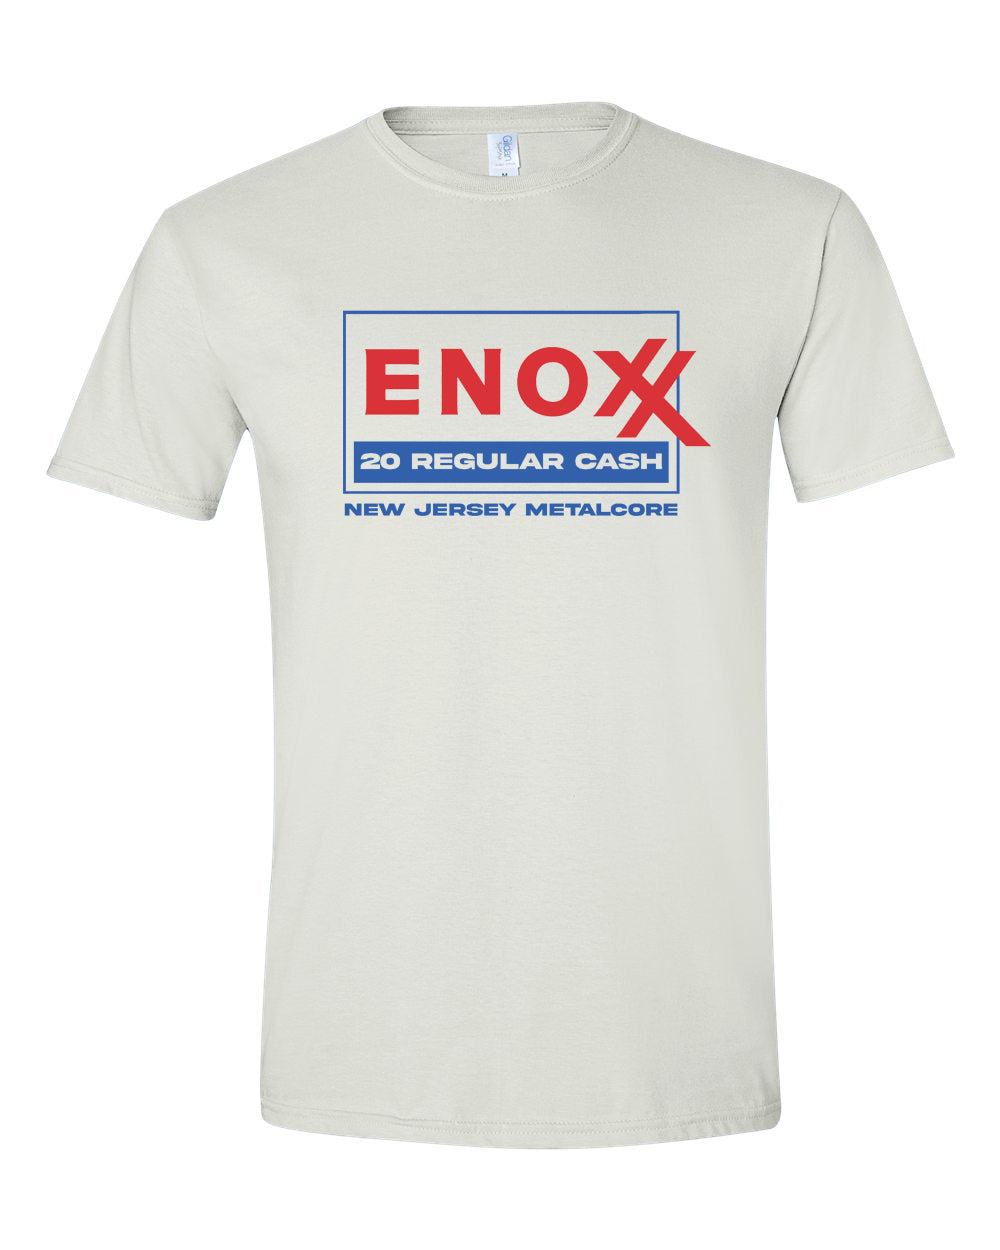 $20 Cash Regular ENOXX T-Shirt